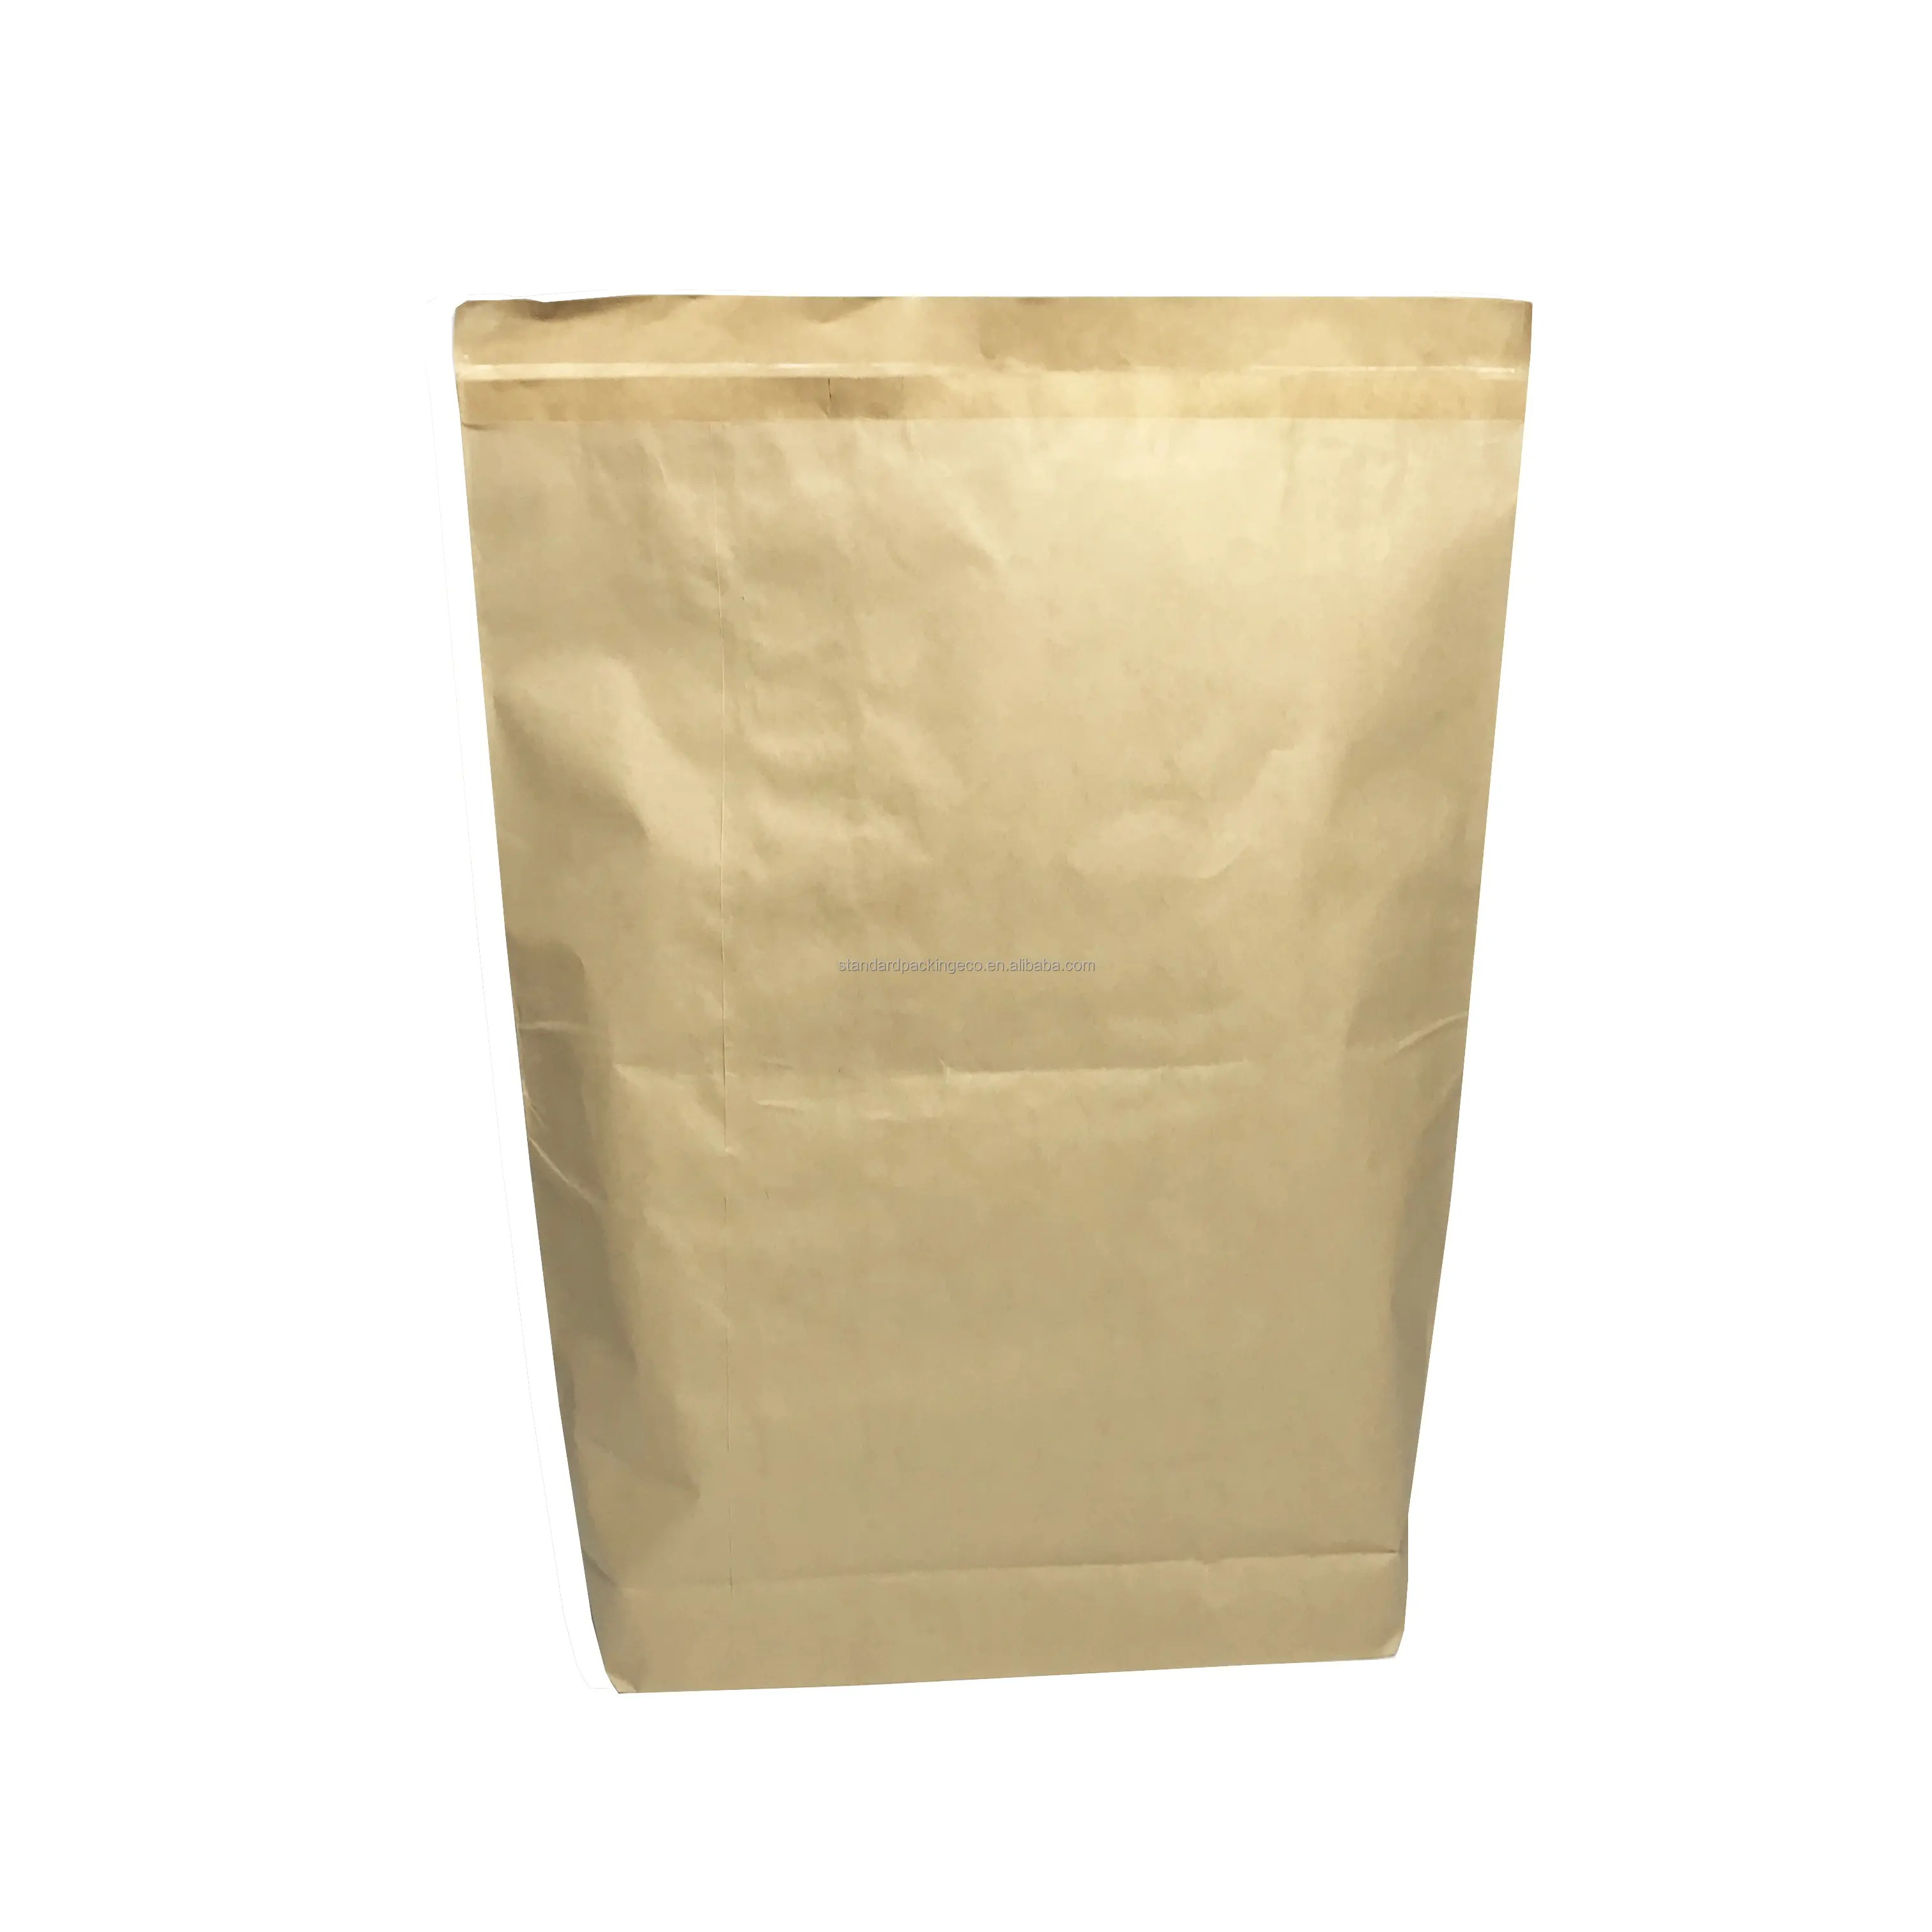 Hot Selling Milk Powder Printed adhesive heat sealed top packaging baby milk powder storage 25kg 50kg Bags